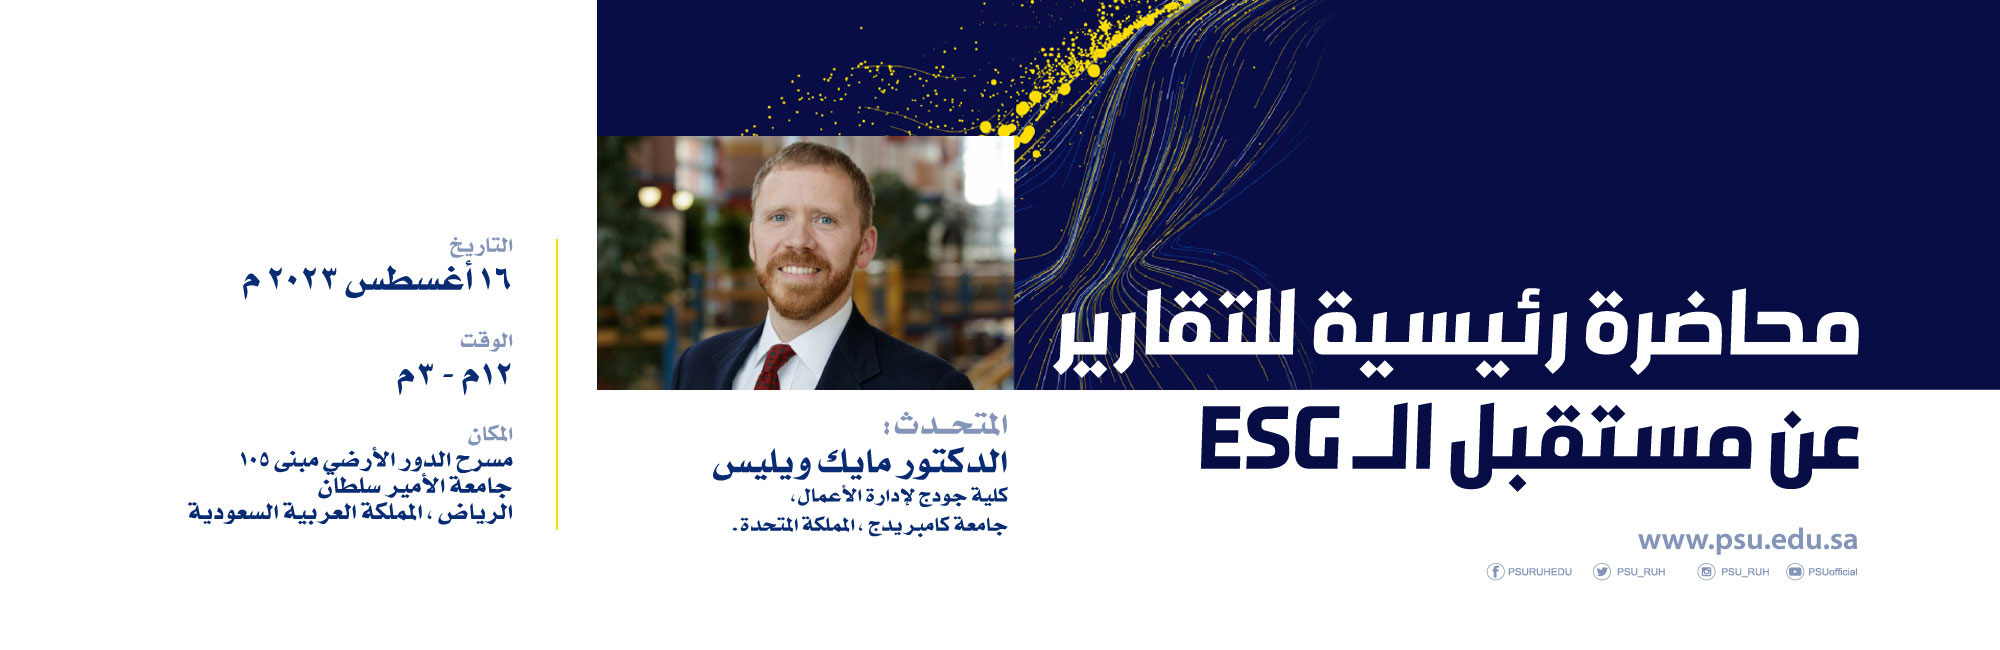 جامعة الامير سلطان تستضيف محاضرة رئيسية تخص التقارير عن مستقبل الممارسات البيئية والاجتماعية وحوكمة الشركات (ESG)